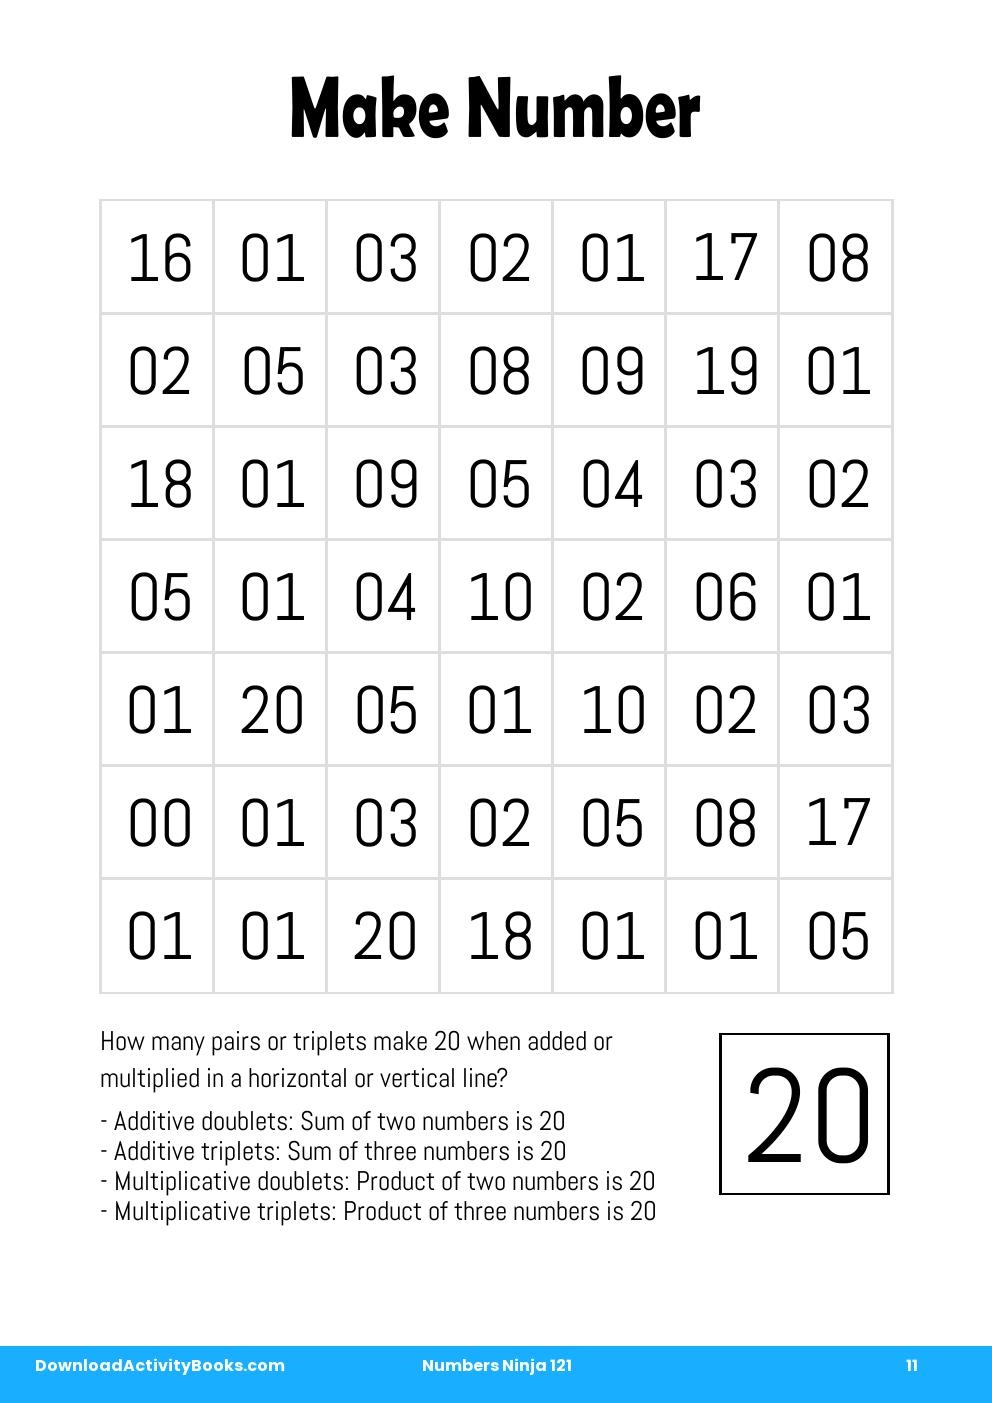 Make Number in Numbers Ninja 121